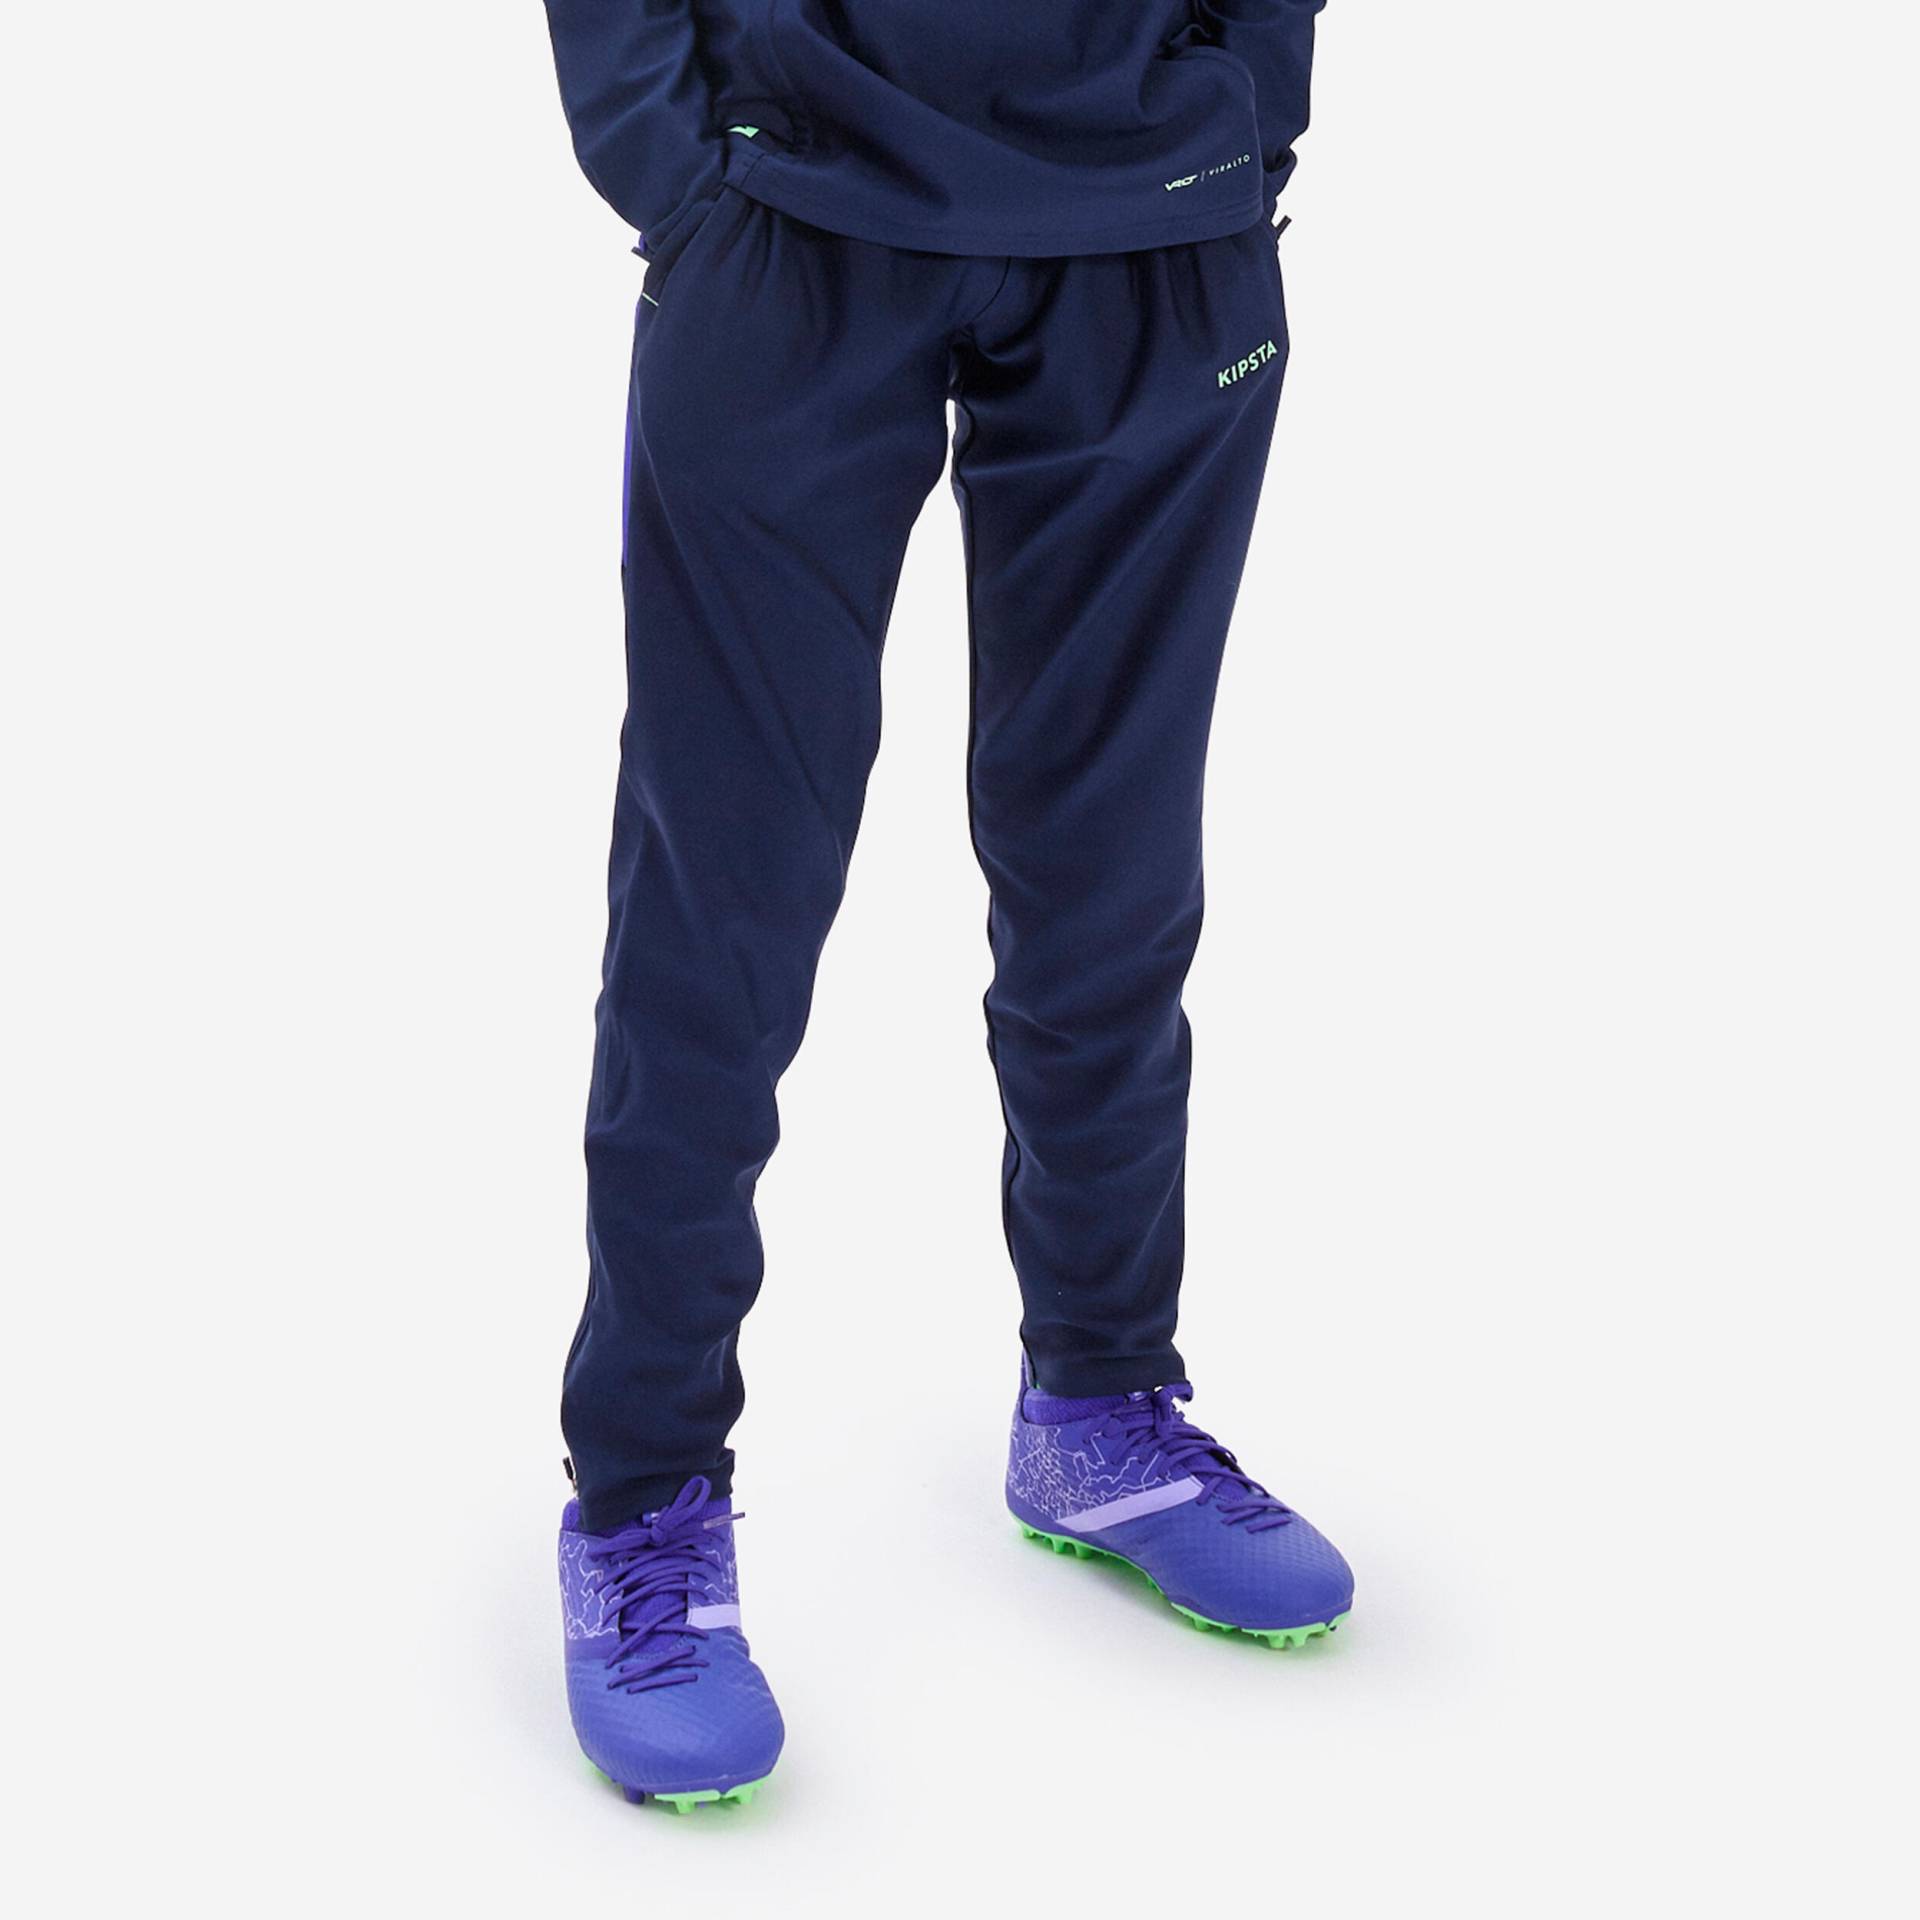 Kinder Fussball Sweatshirt mit Reissverschluss - Viralto Alpha blau/violett von KIPSTA